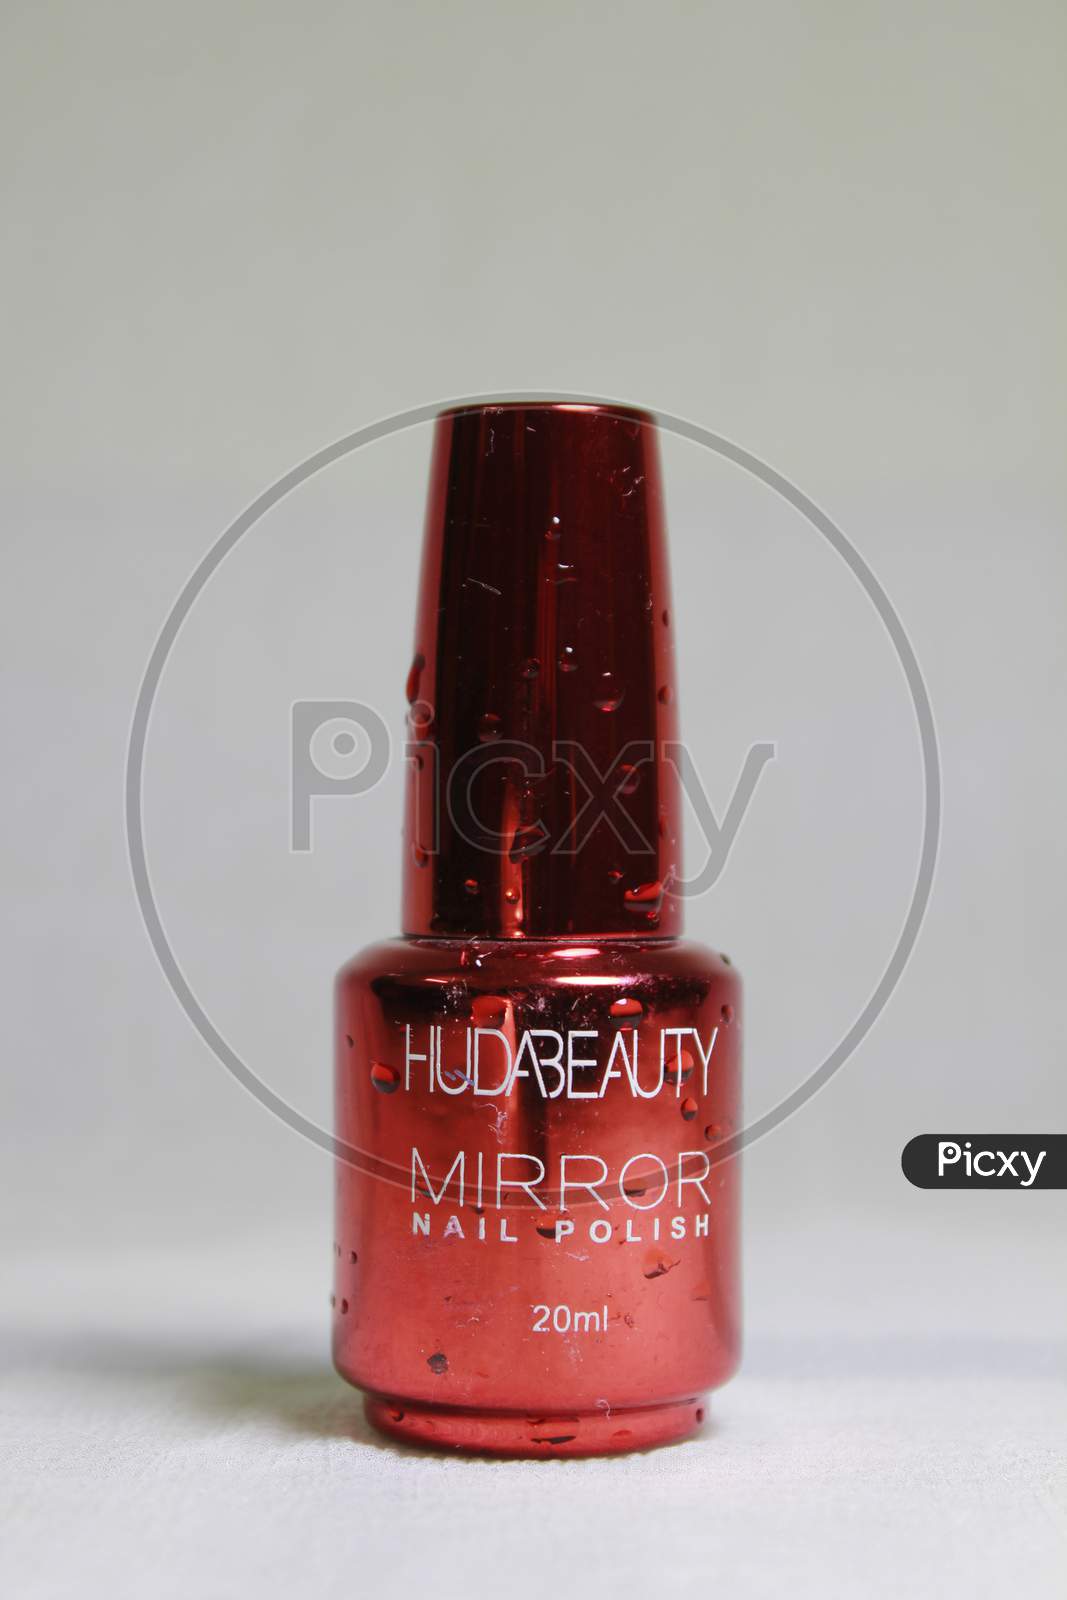 Huda Beauty nail polish product photoshoot